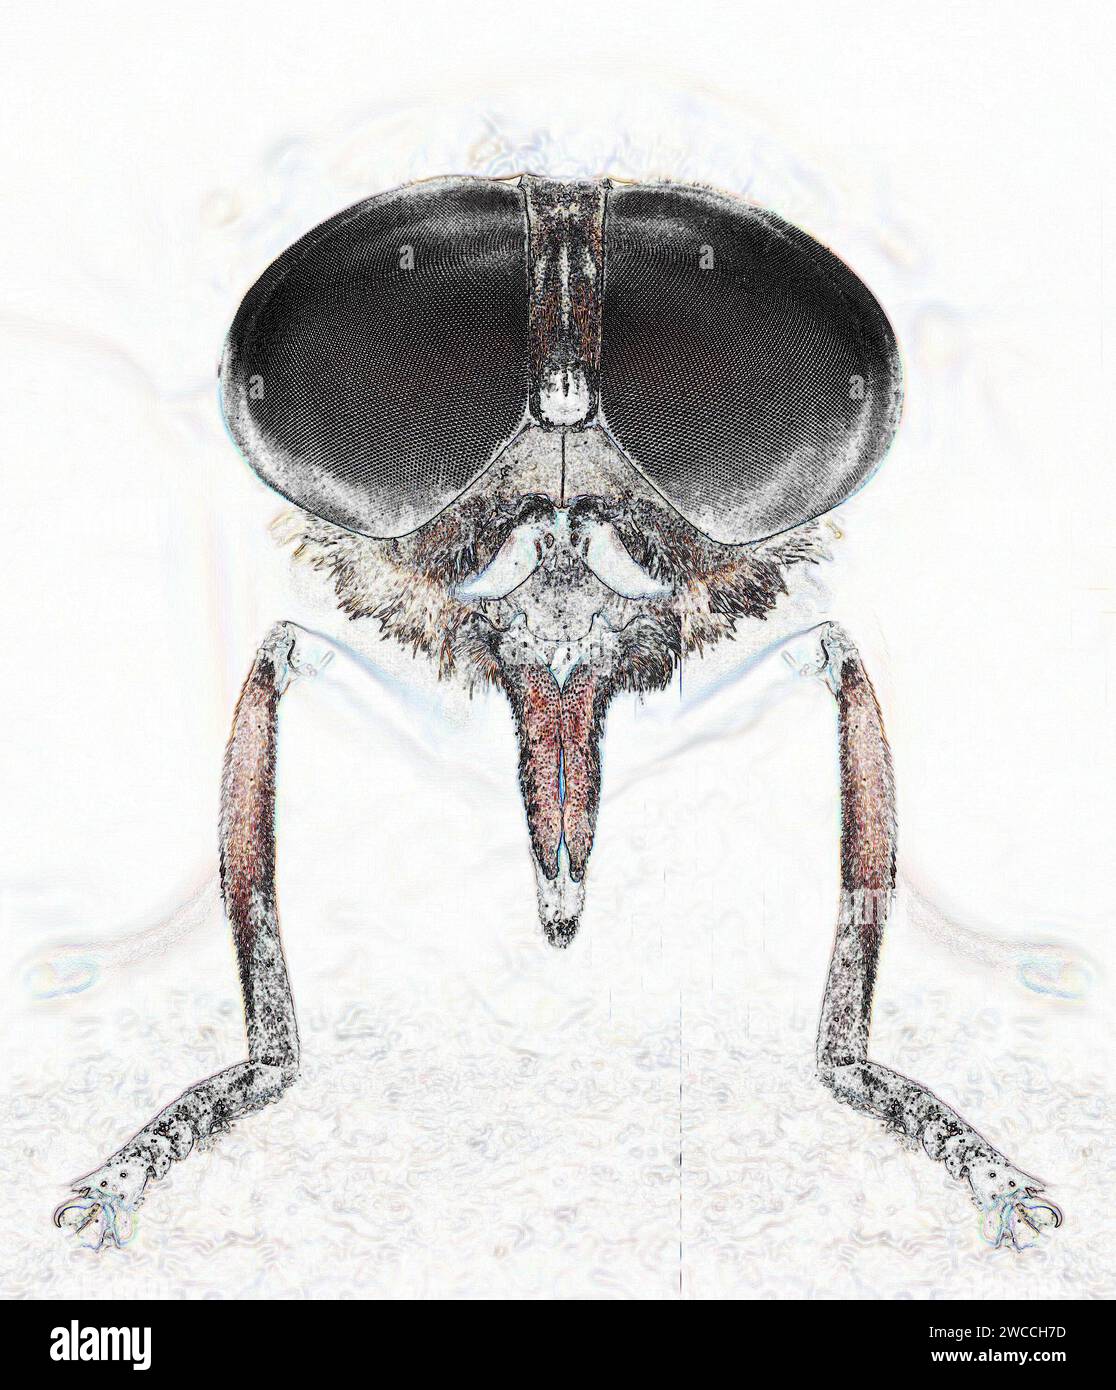 Image monochromée simplifiée de la tête de la mouche géante noire Tabanus sudeticus soulignant ses grands yeux composés et son proboscis perçant Banque D'Images